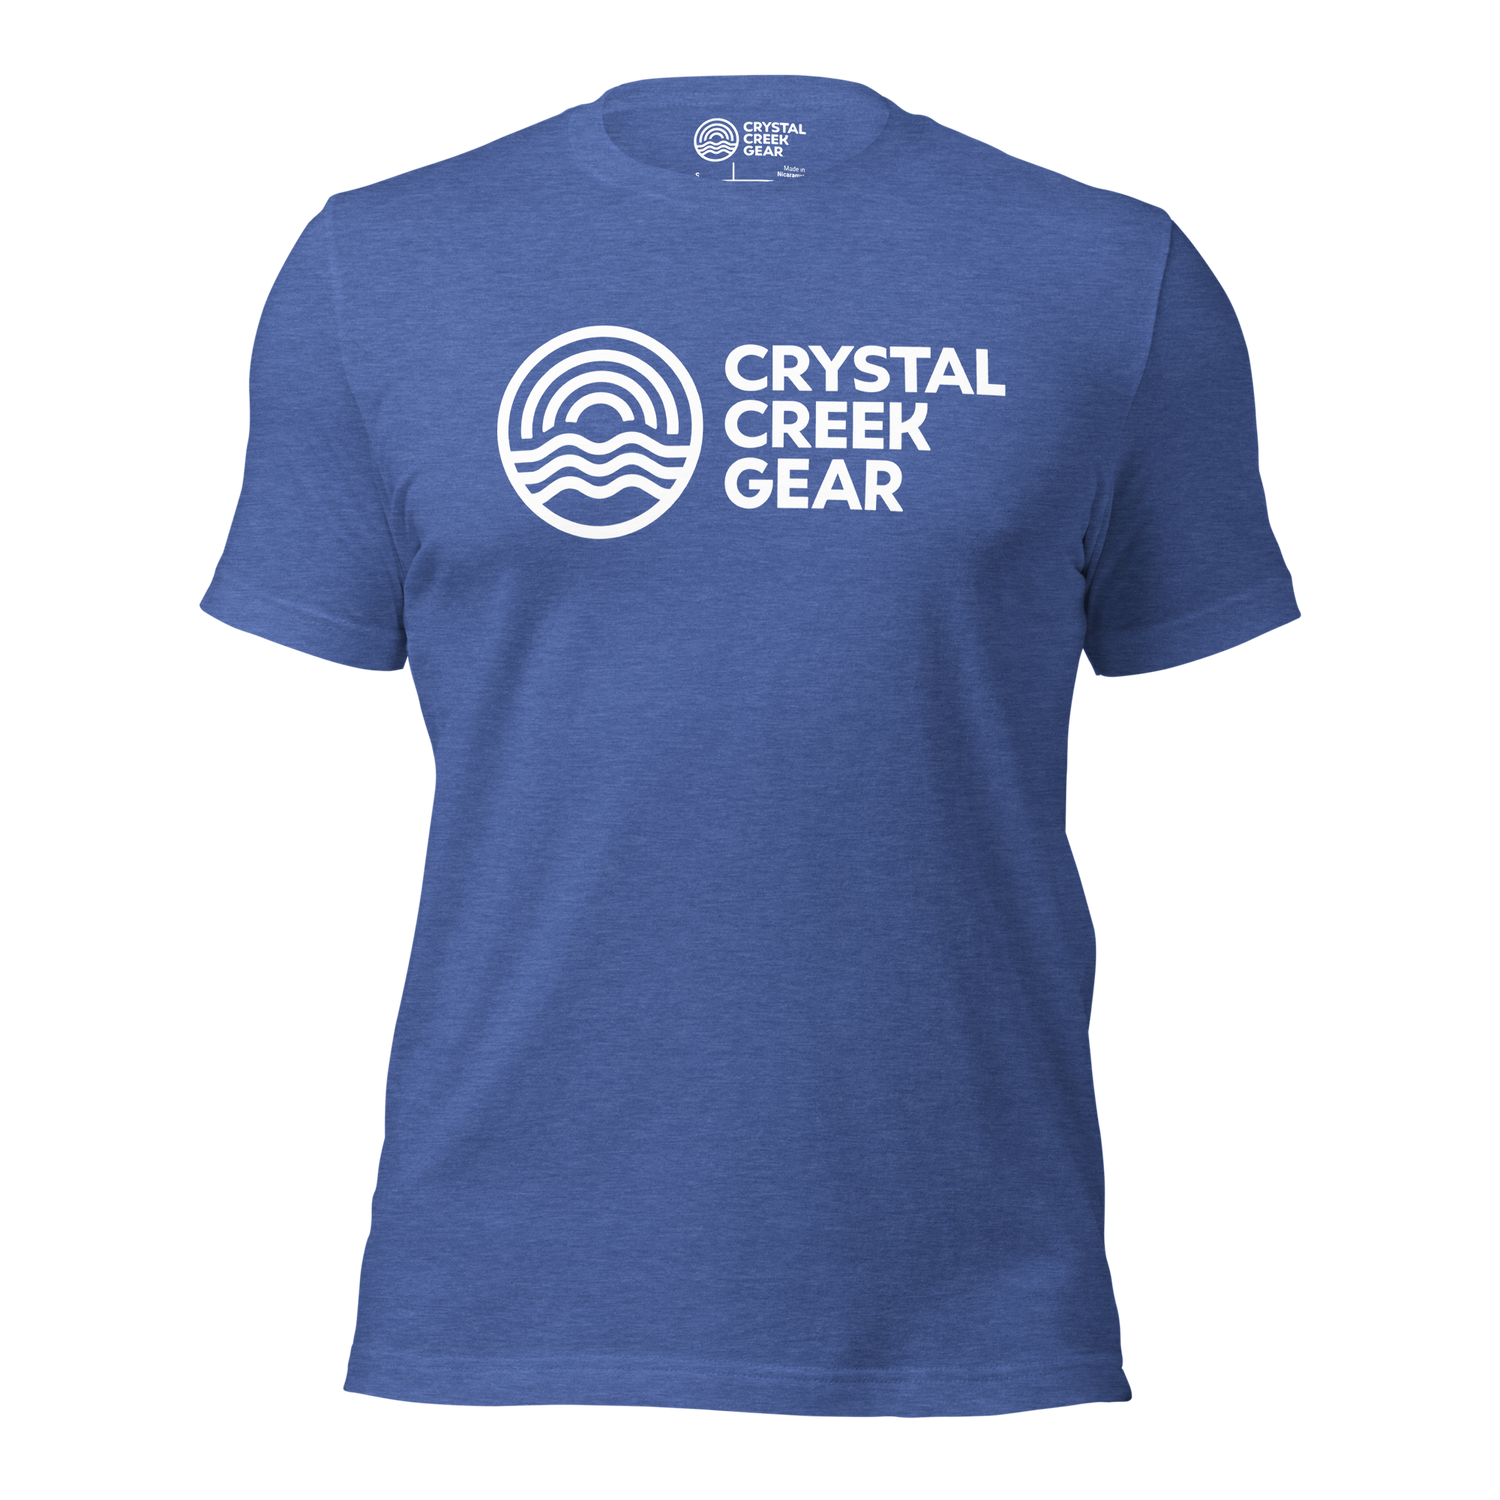 Crystal Creek Classic Tee - Crystal Creek Gear